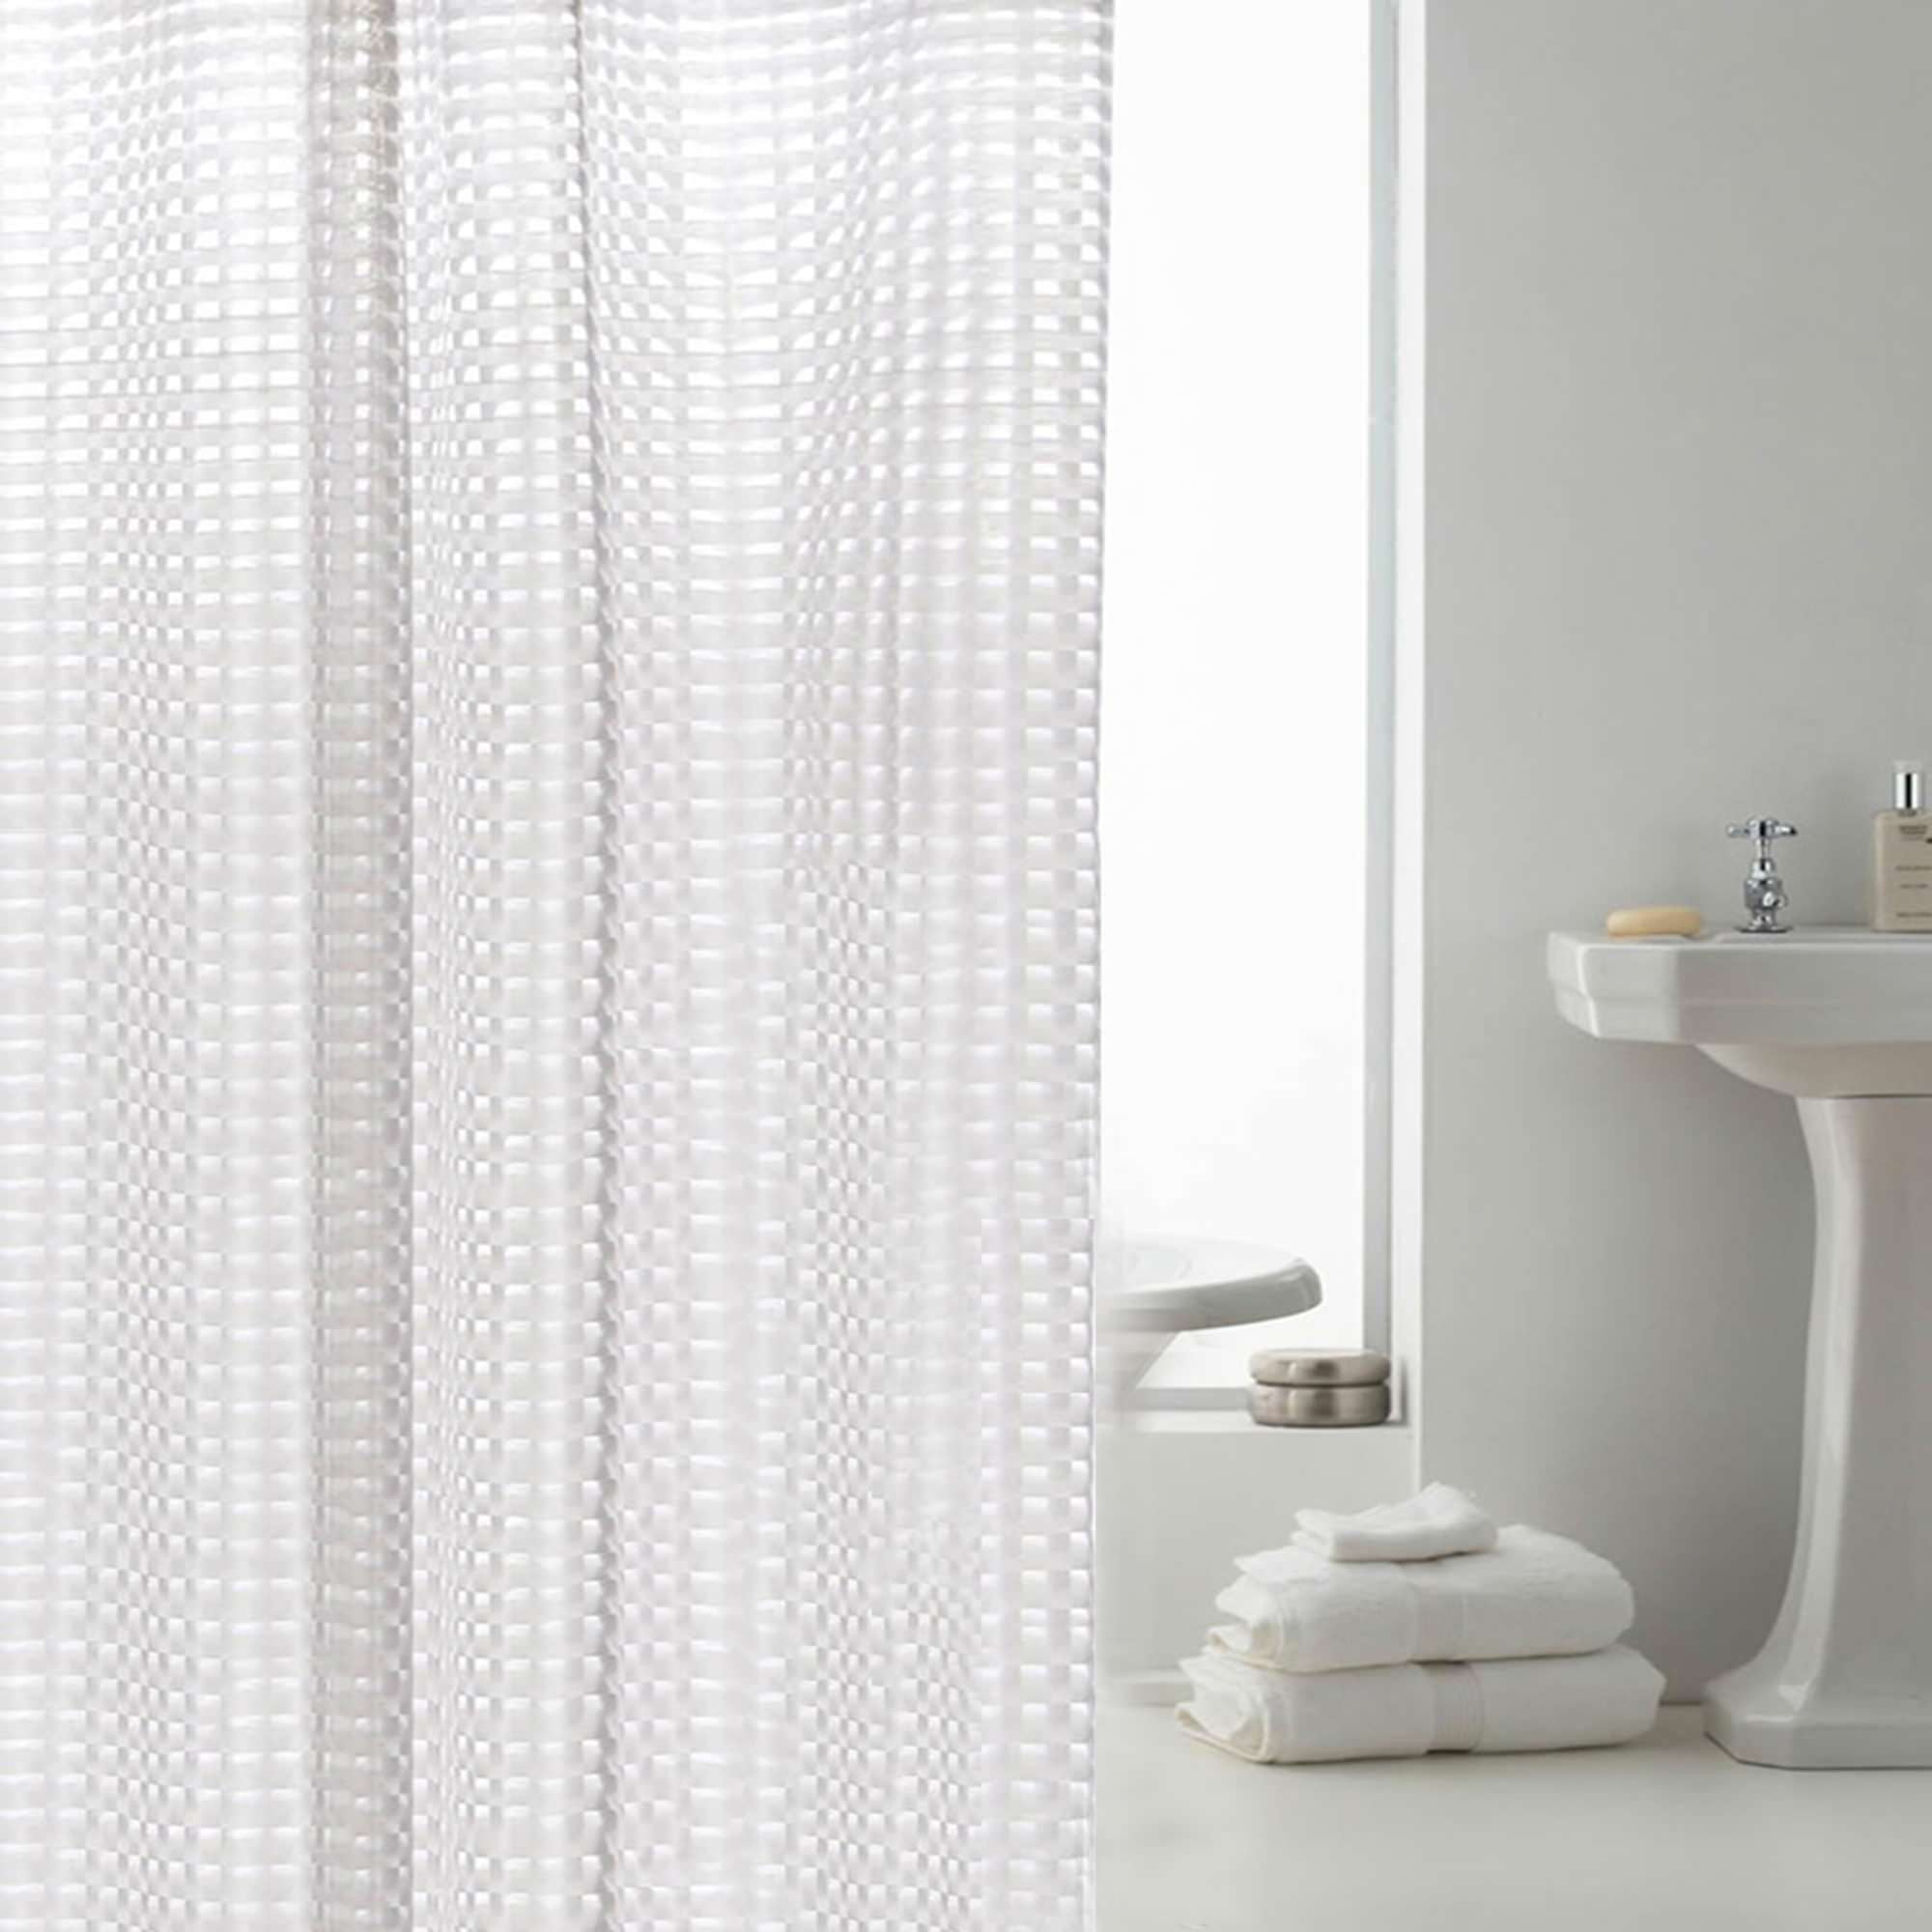 Anti-Bacterial EVA Waterproof bathroom Curtain Anti-Mold Shower curtain 